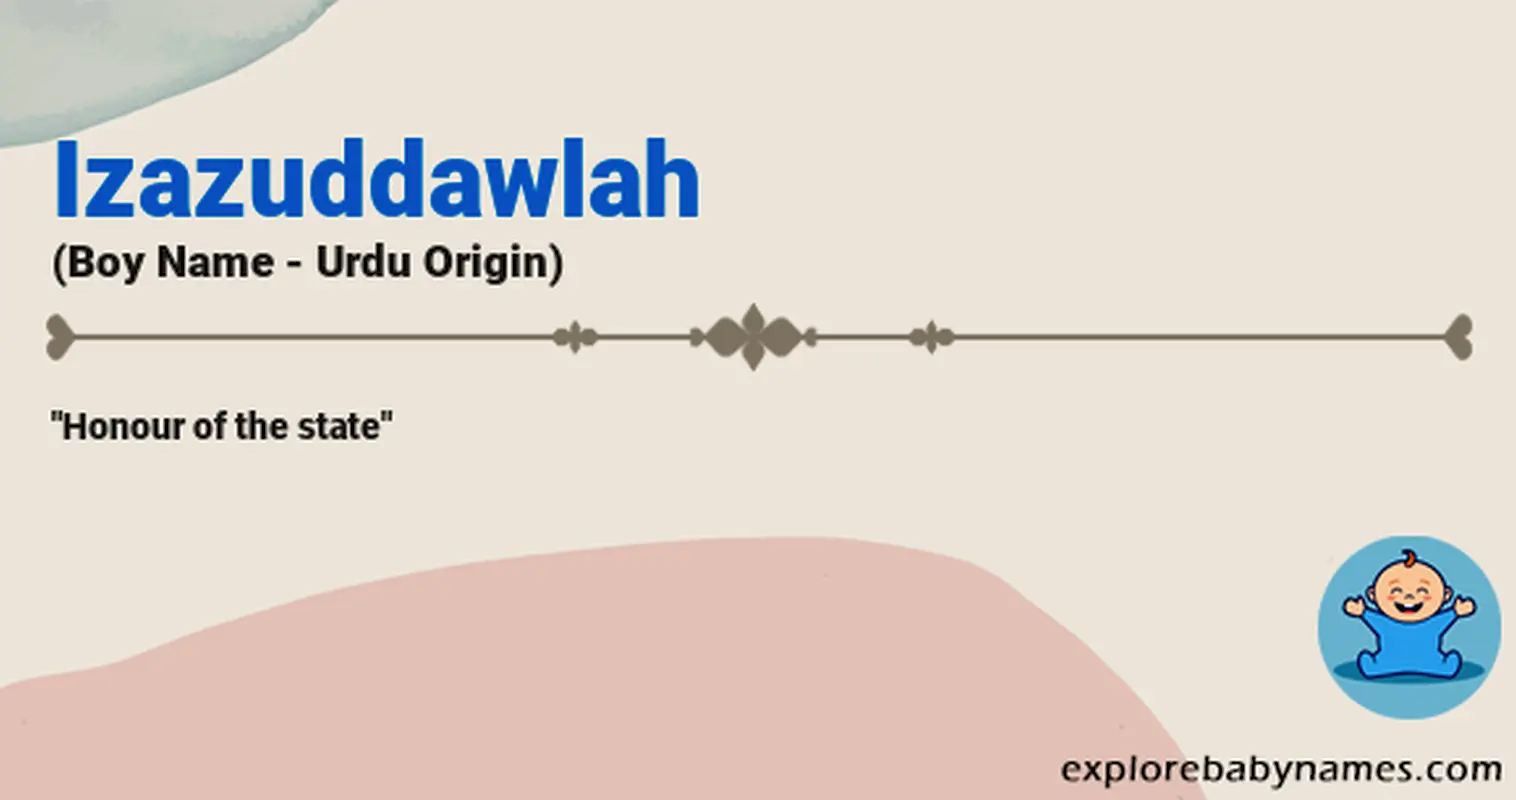 Meaning of Izazuddawlah